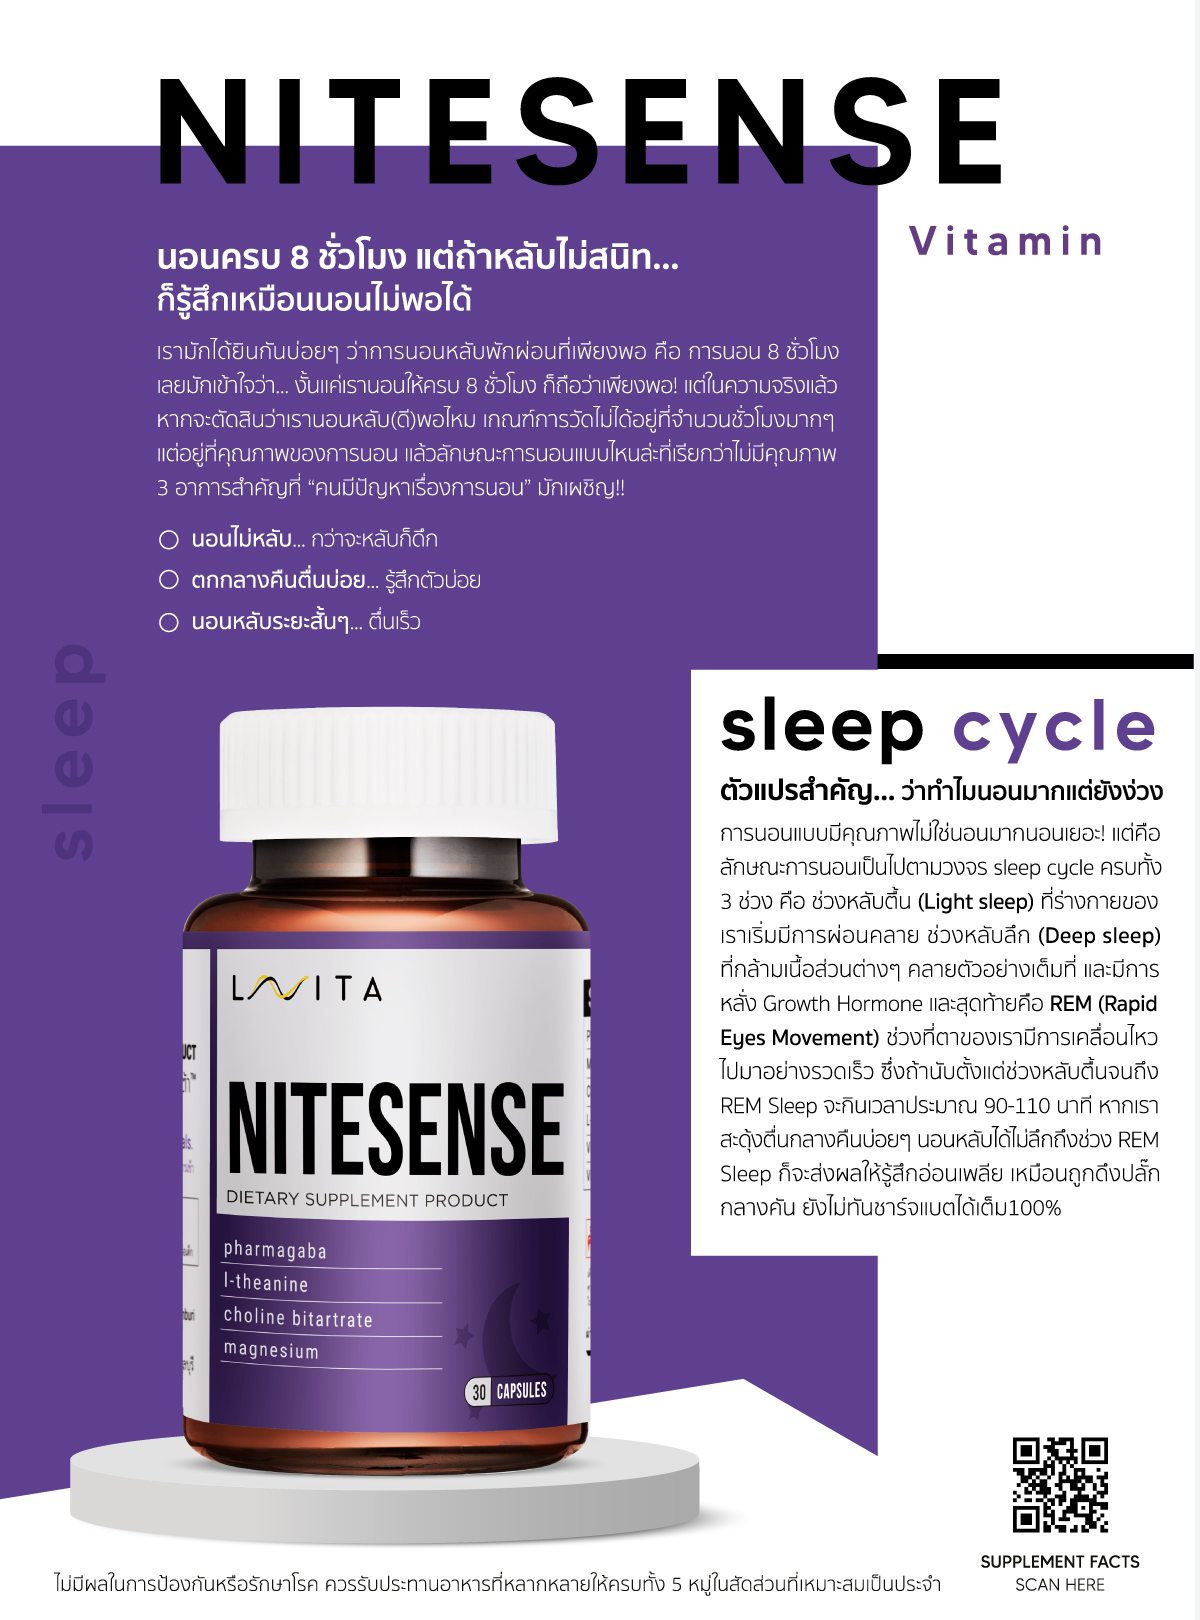 Nitesense มีส่วนช่วยในการทำงานของสารสื่ประสาทและการนอนหลับตามปกติ